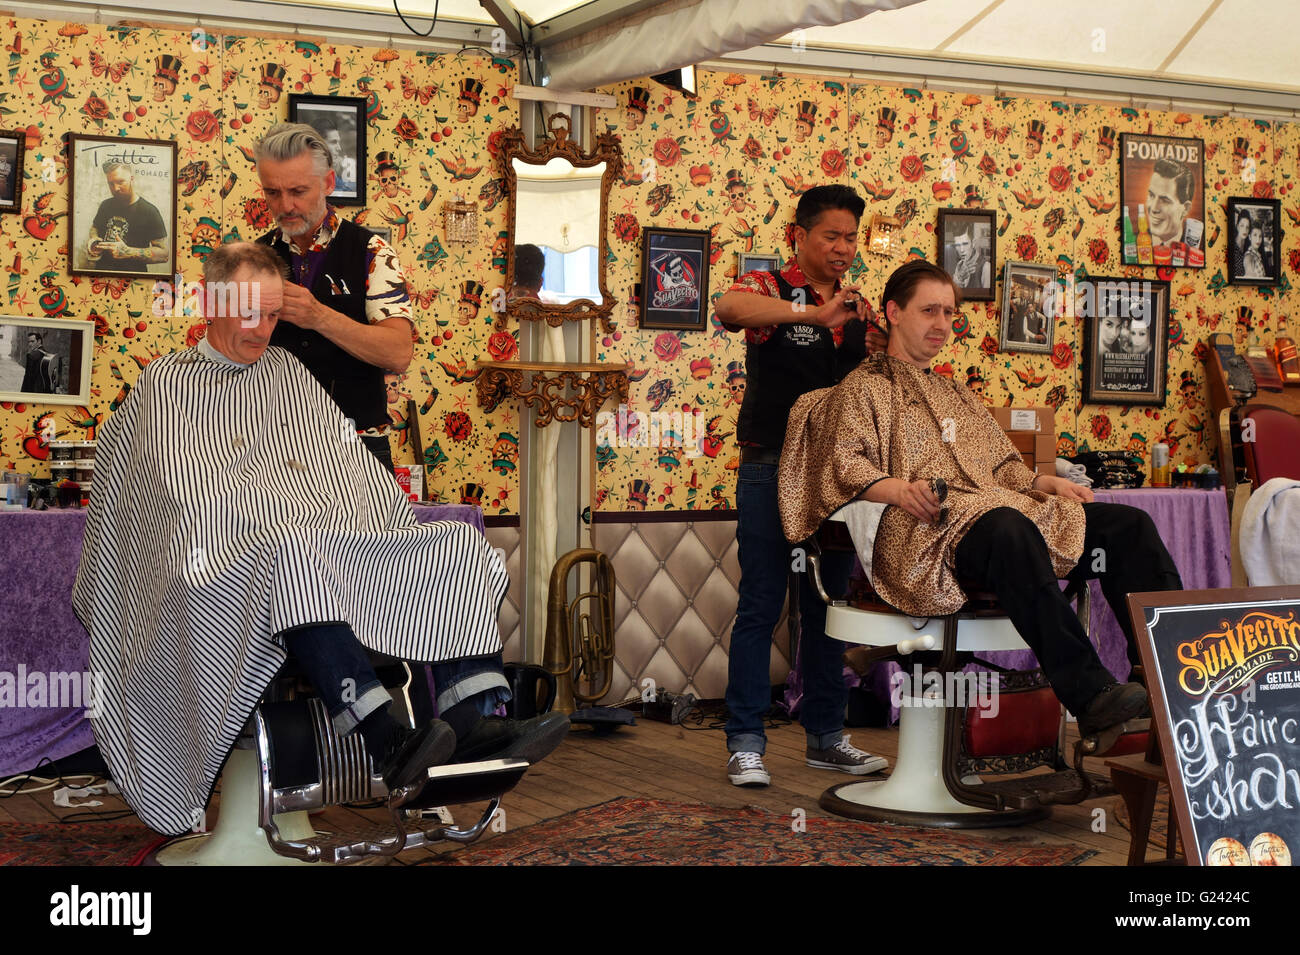 Vasco's vintage barber shop at rock n roll event, Venlo Netherlands Stock  Photo - Alamy